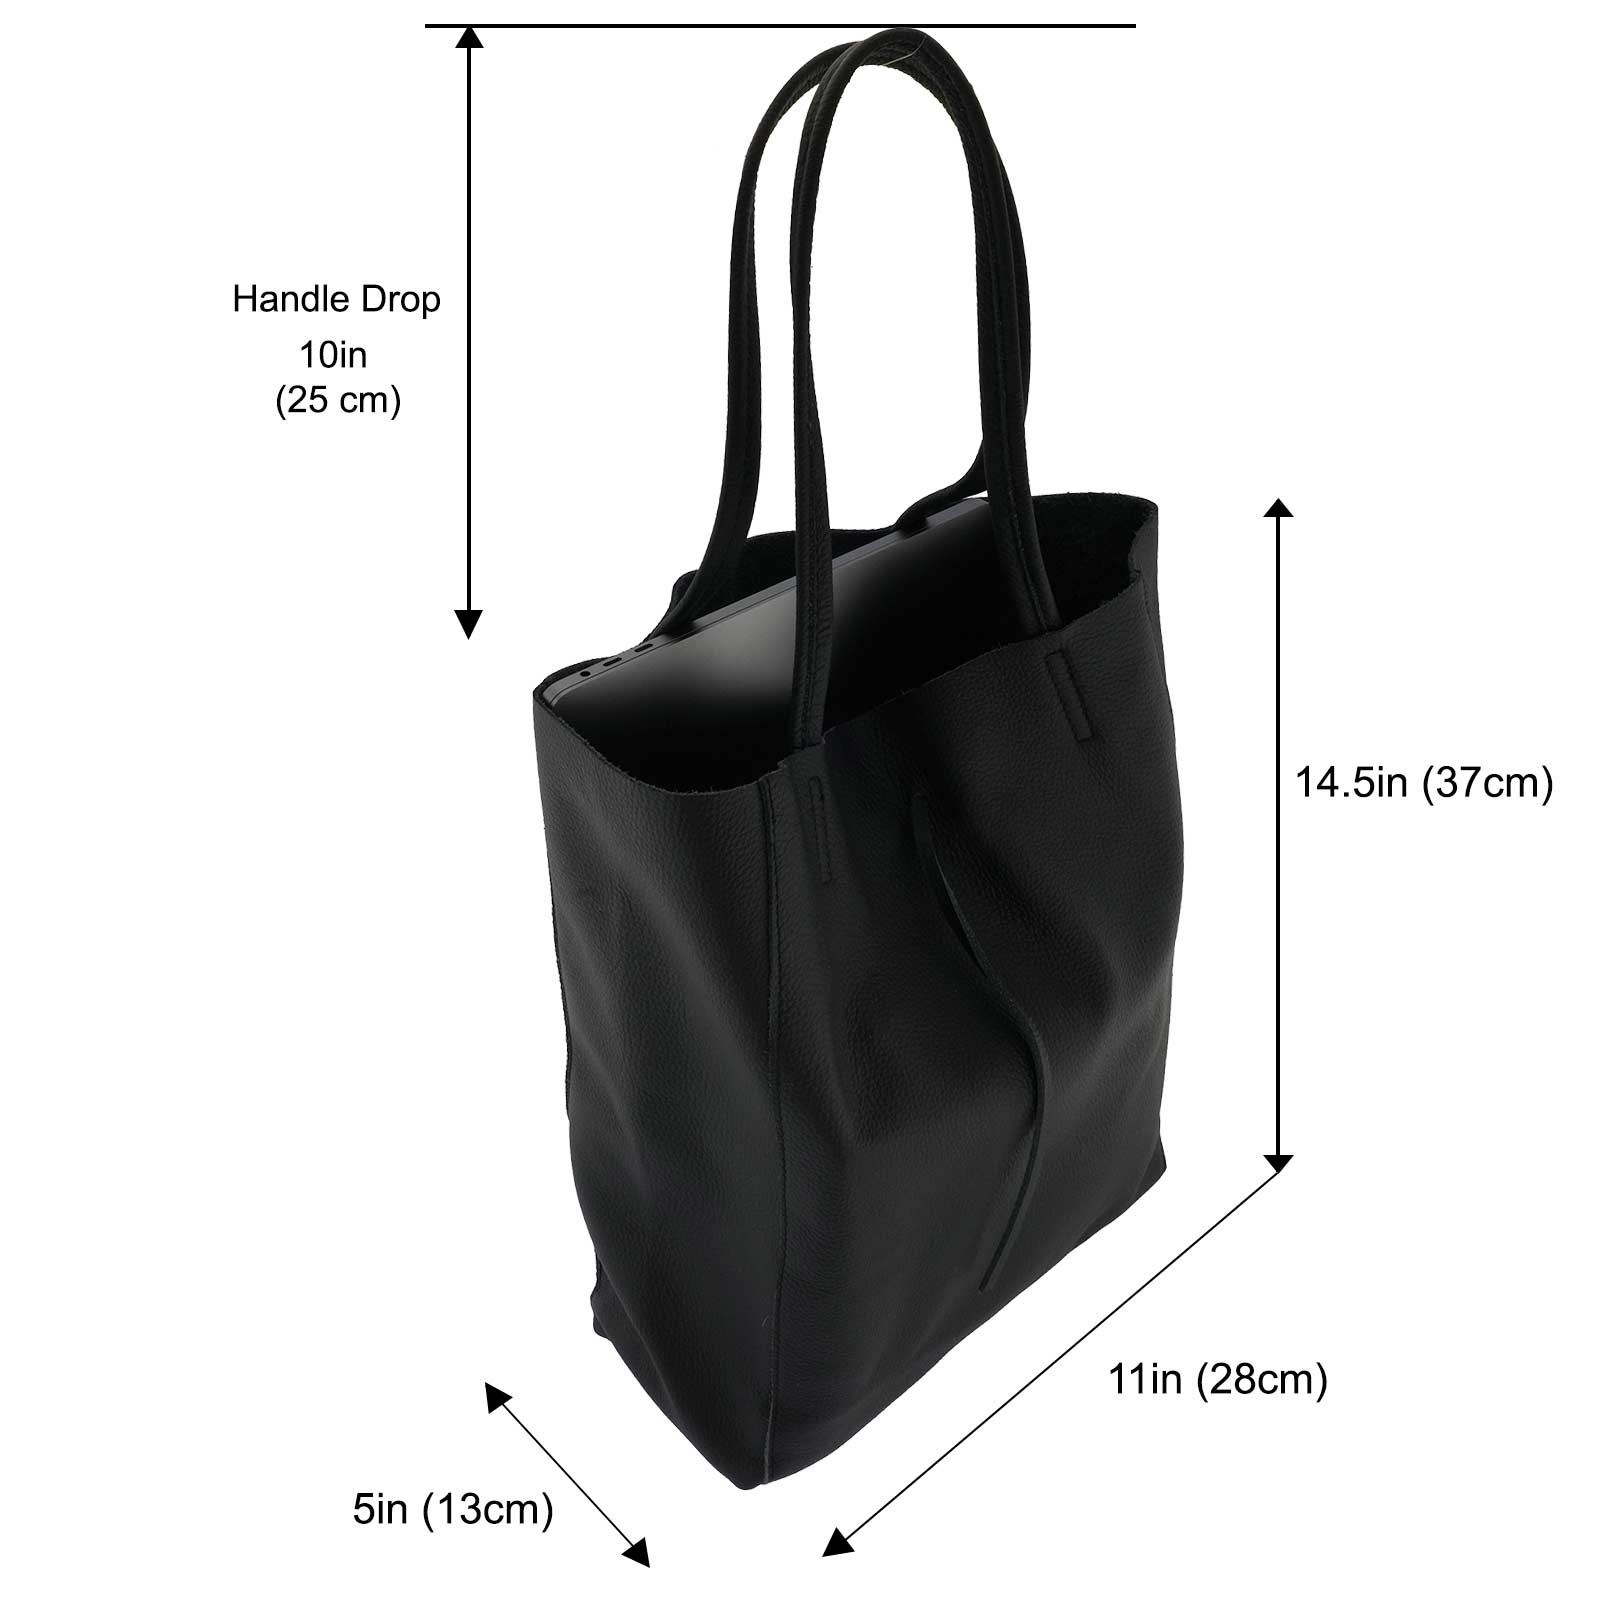 Fioretta Italian Genuine Leather Shopper Bag Carryall Handbag Shoulder Bag Tote for Women - Black